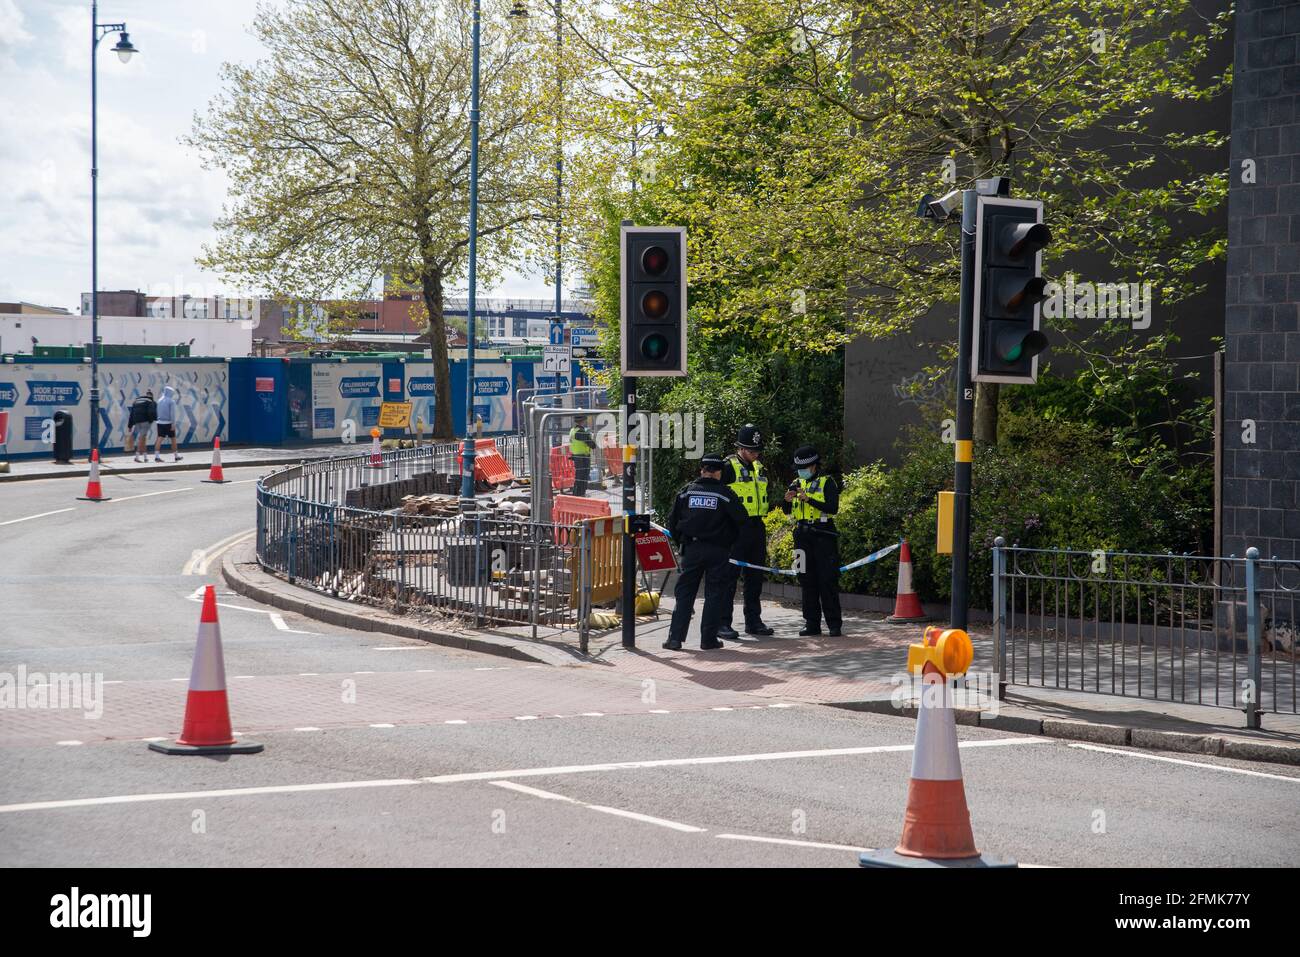 Birmingham, Reino Unido. 10th de mayo de 2021: La policía de West Midlands está investigando después de que los trabajadores de la construcción descubrieran restos humanos bajo un pavimento el domingo por la mañana (9th de mayo de 2021). Crédito: Ryan Underwood / Alamy Live News Foto de stock